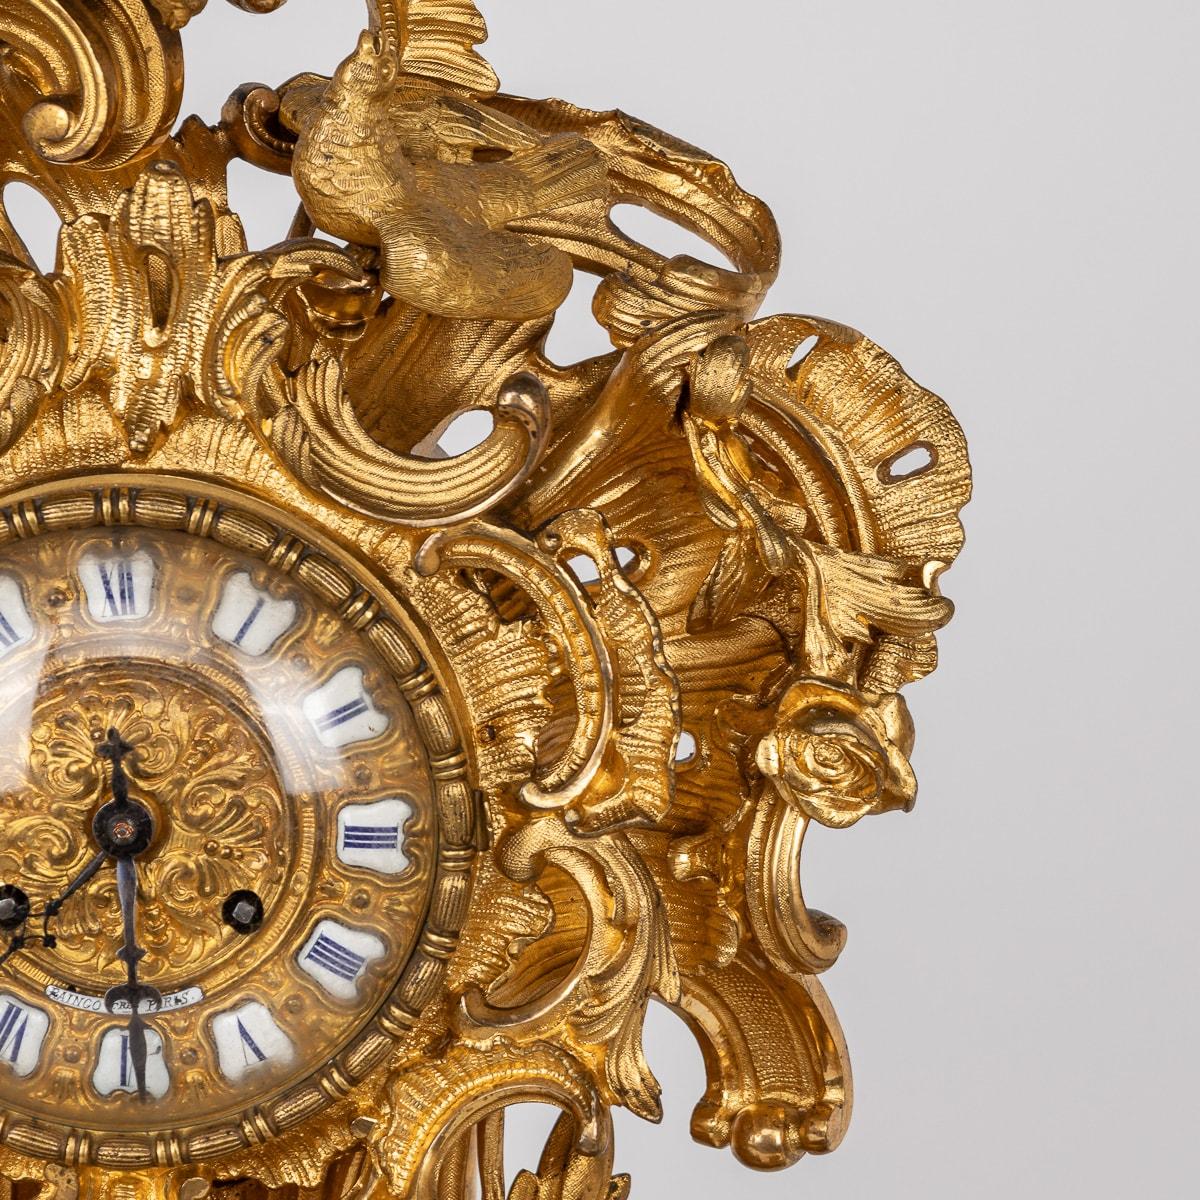 Mid-19th Century Antique 19th Century French Gilt Bronze Clock, Raingo Freres, Paris c.1850 For Sale